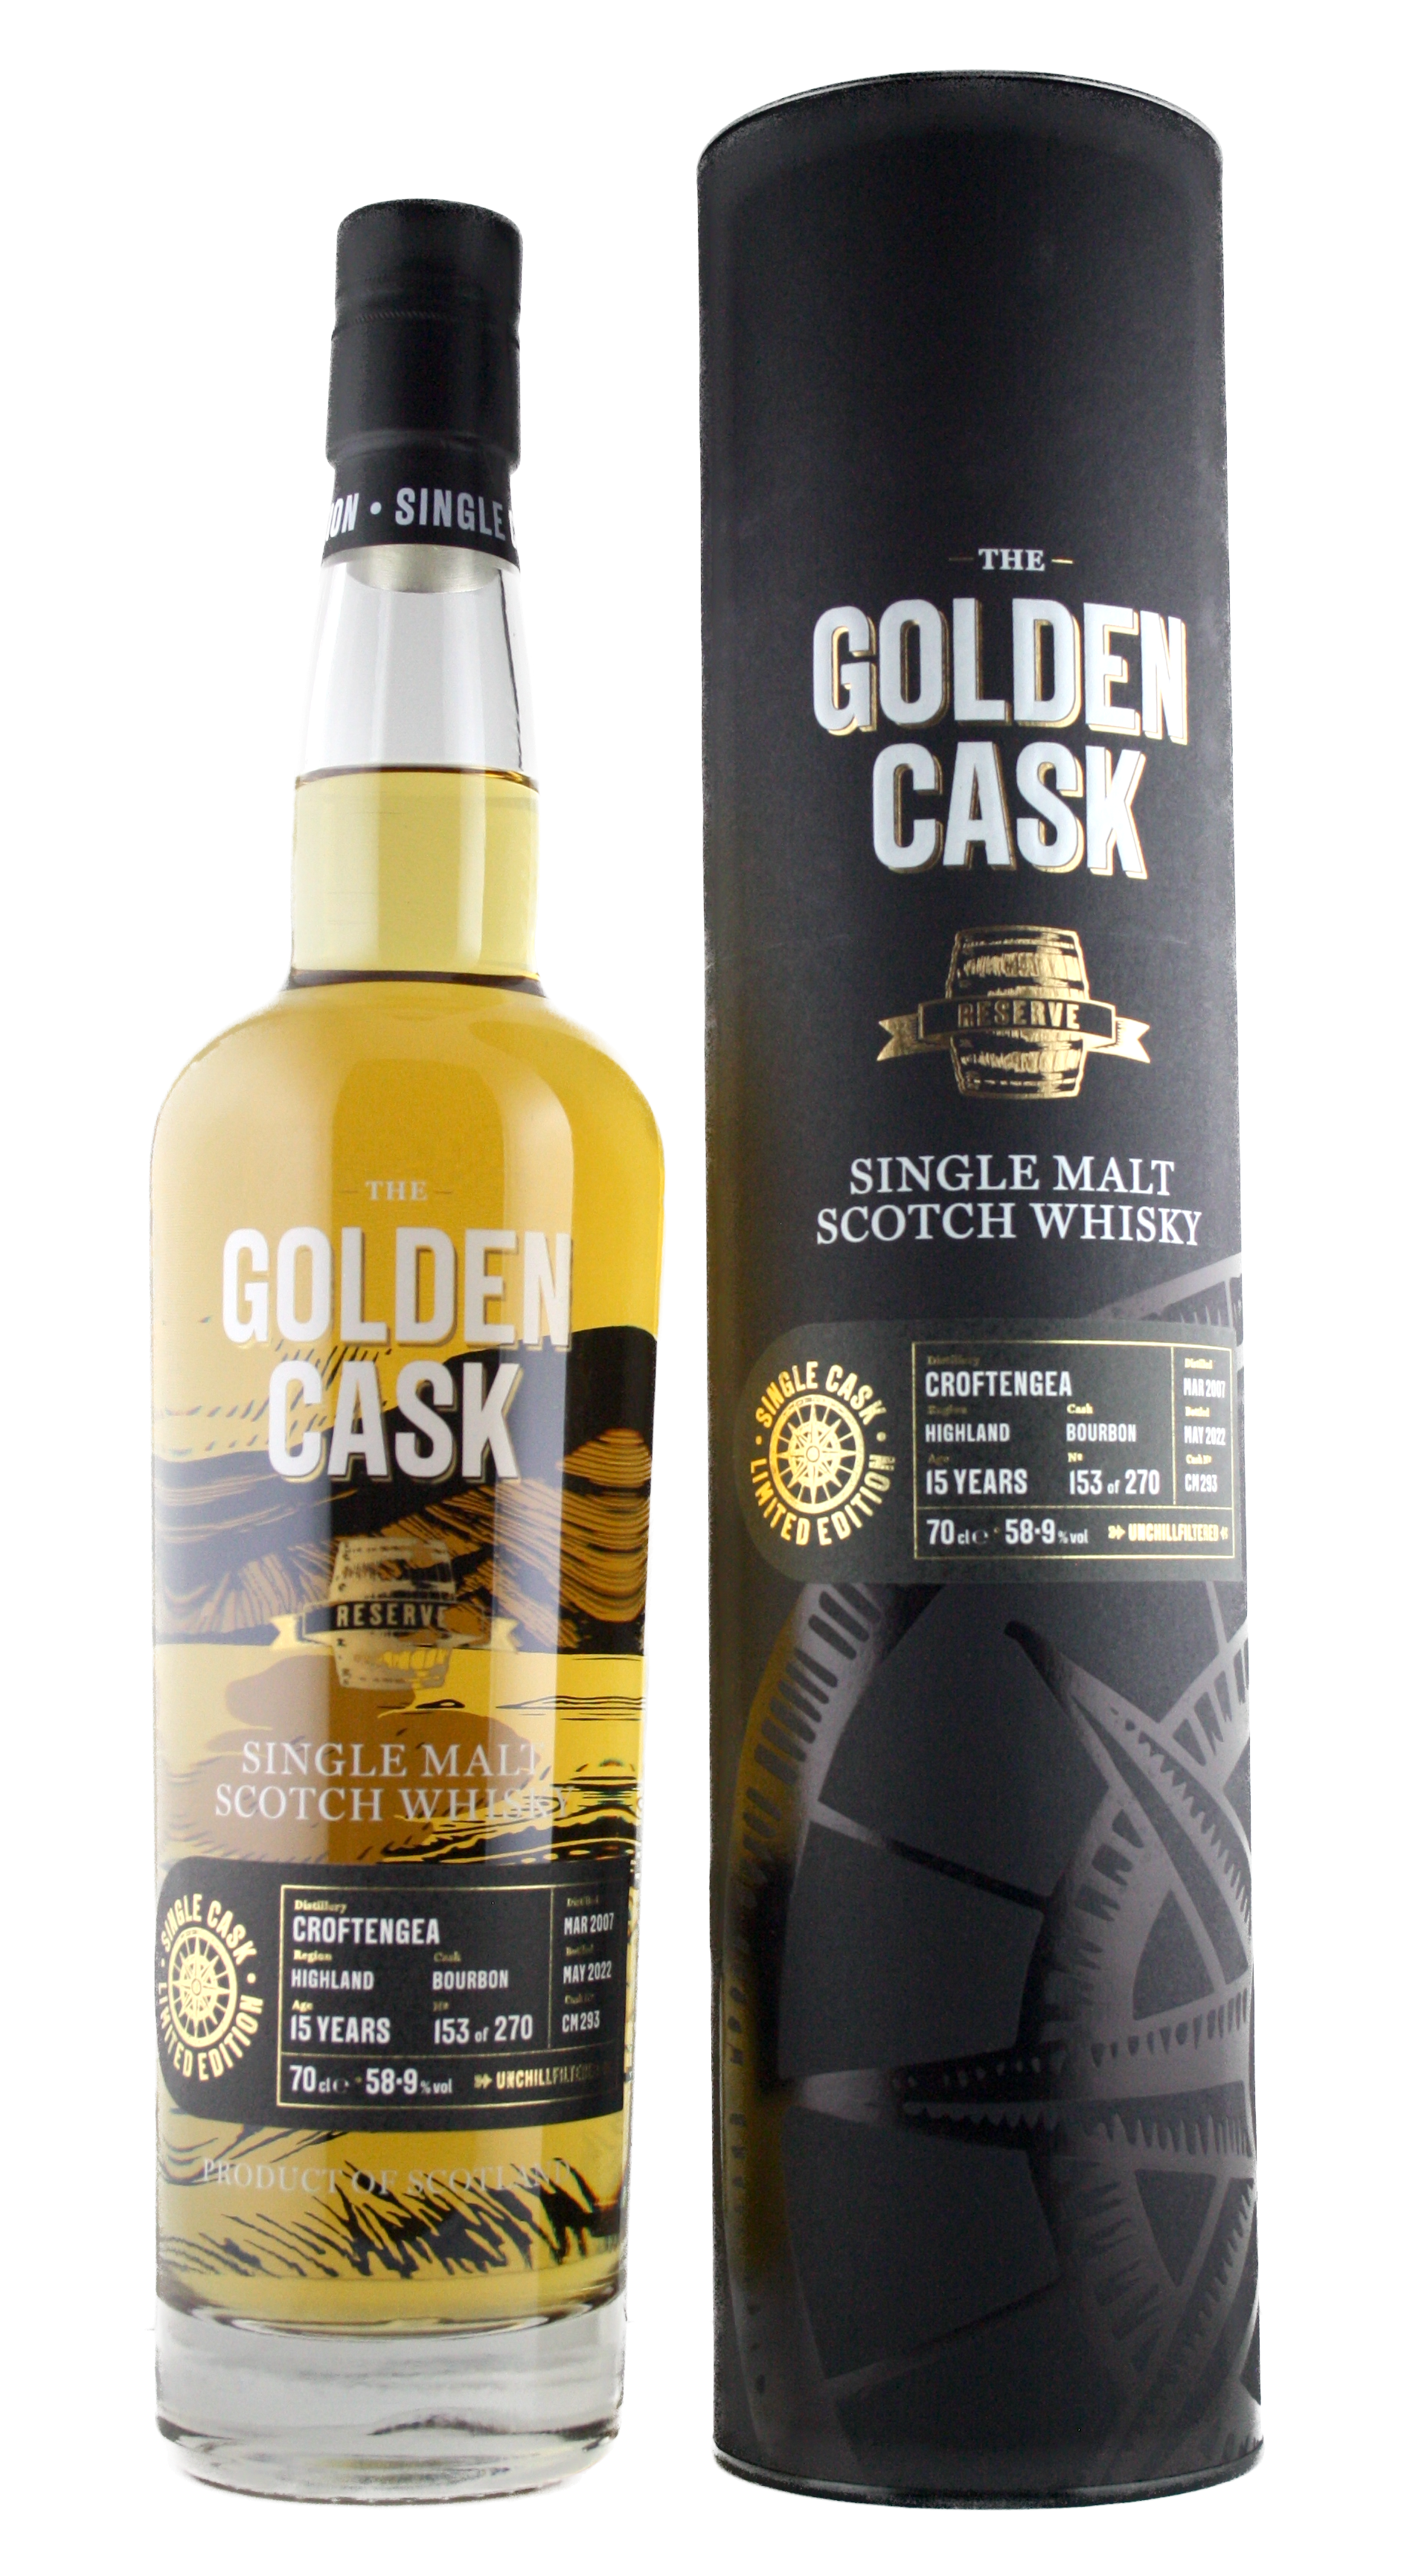 The Golden Cask Croftengea 15 Years